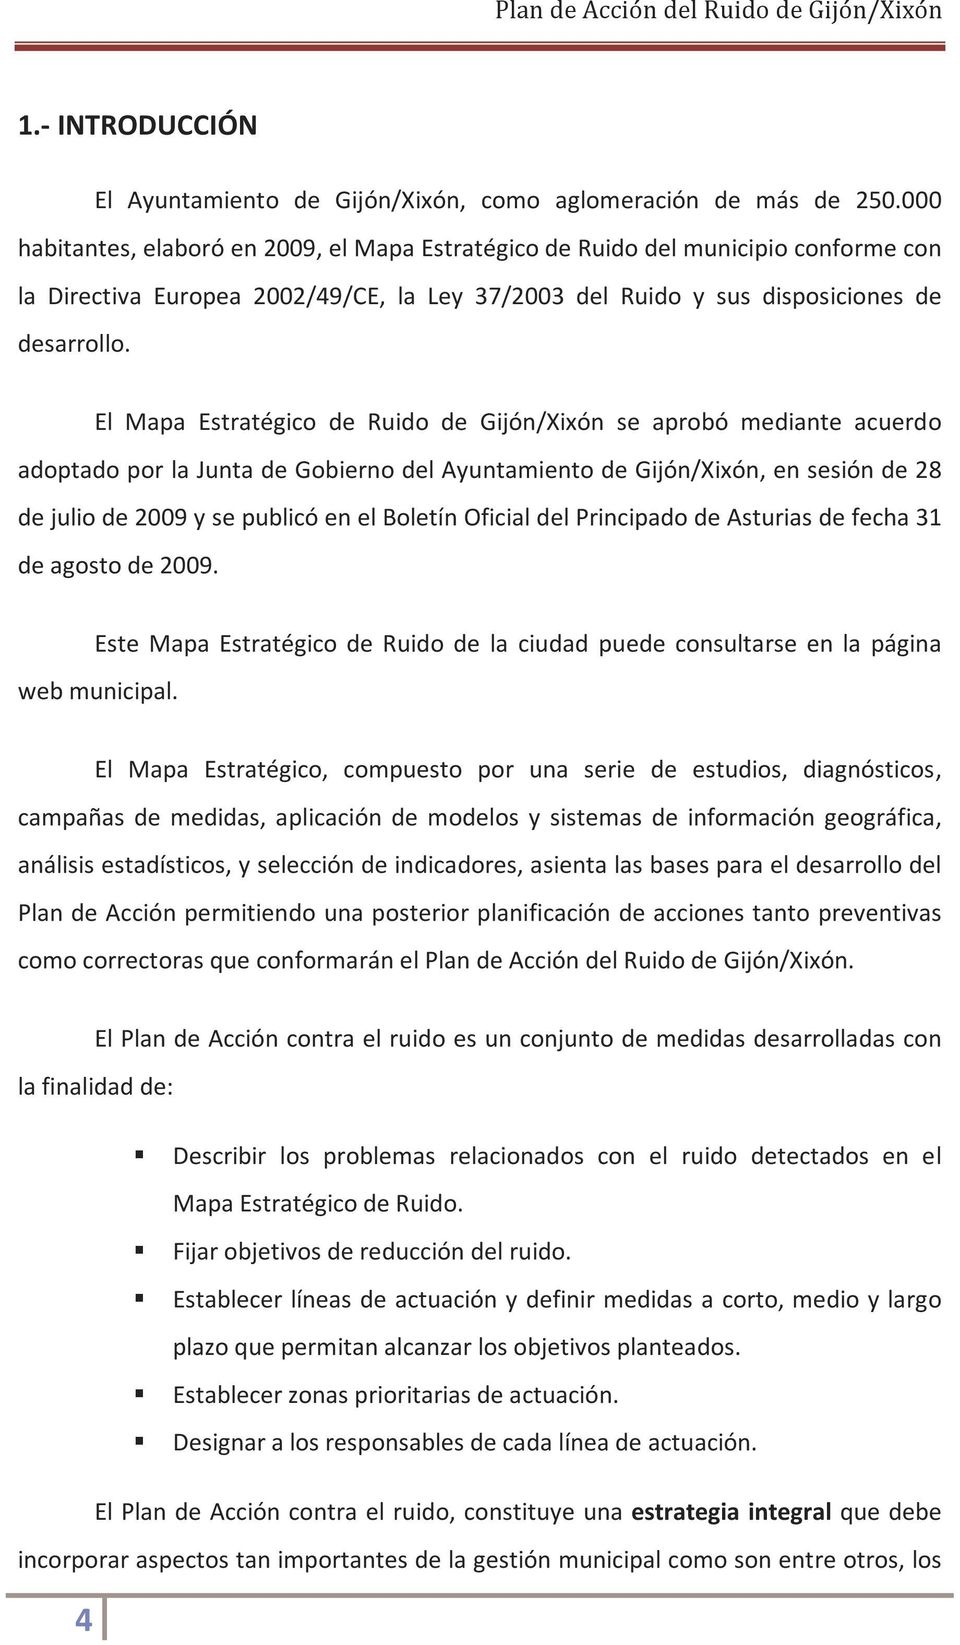 El Mapa Estratégico de Ruido de Gijón/Xixón se aprobó mediante acuerdo adoptado por la Junta de Gobierno del Ayuntamiento de Gijón/Xixón, en sesión de 28 de julio de 2009 y se publicó en el Boletín